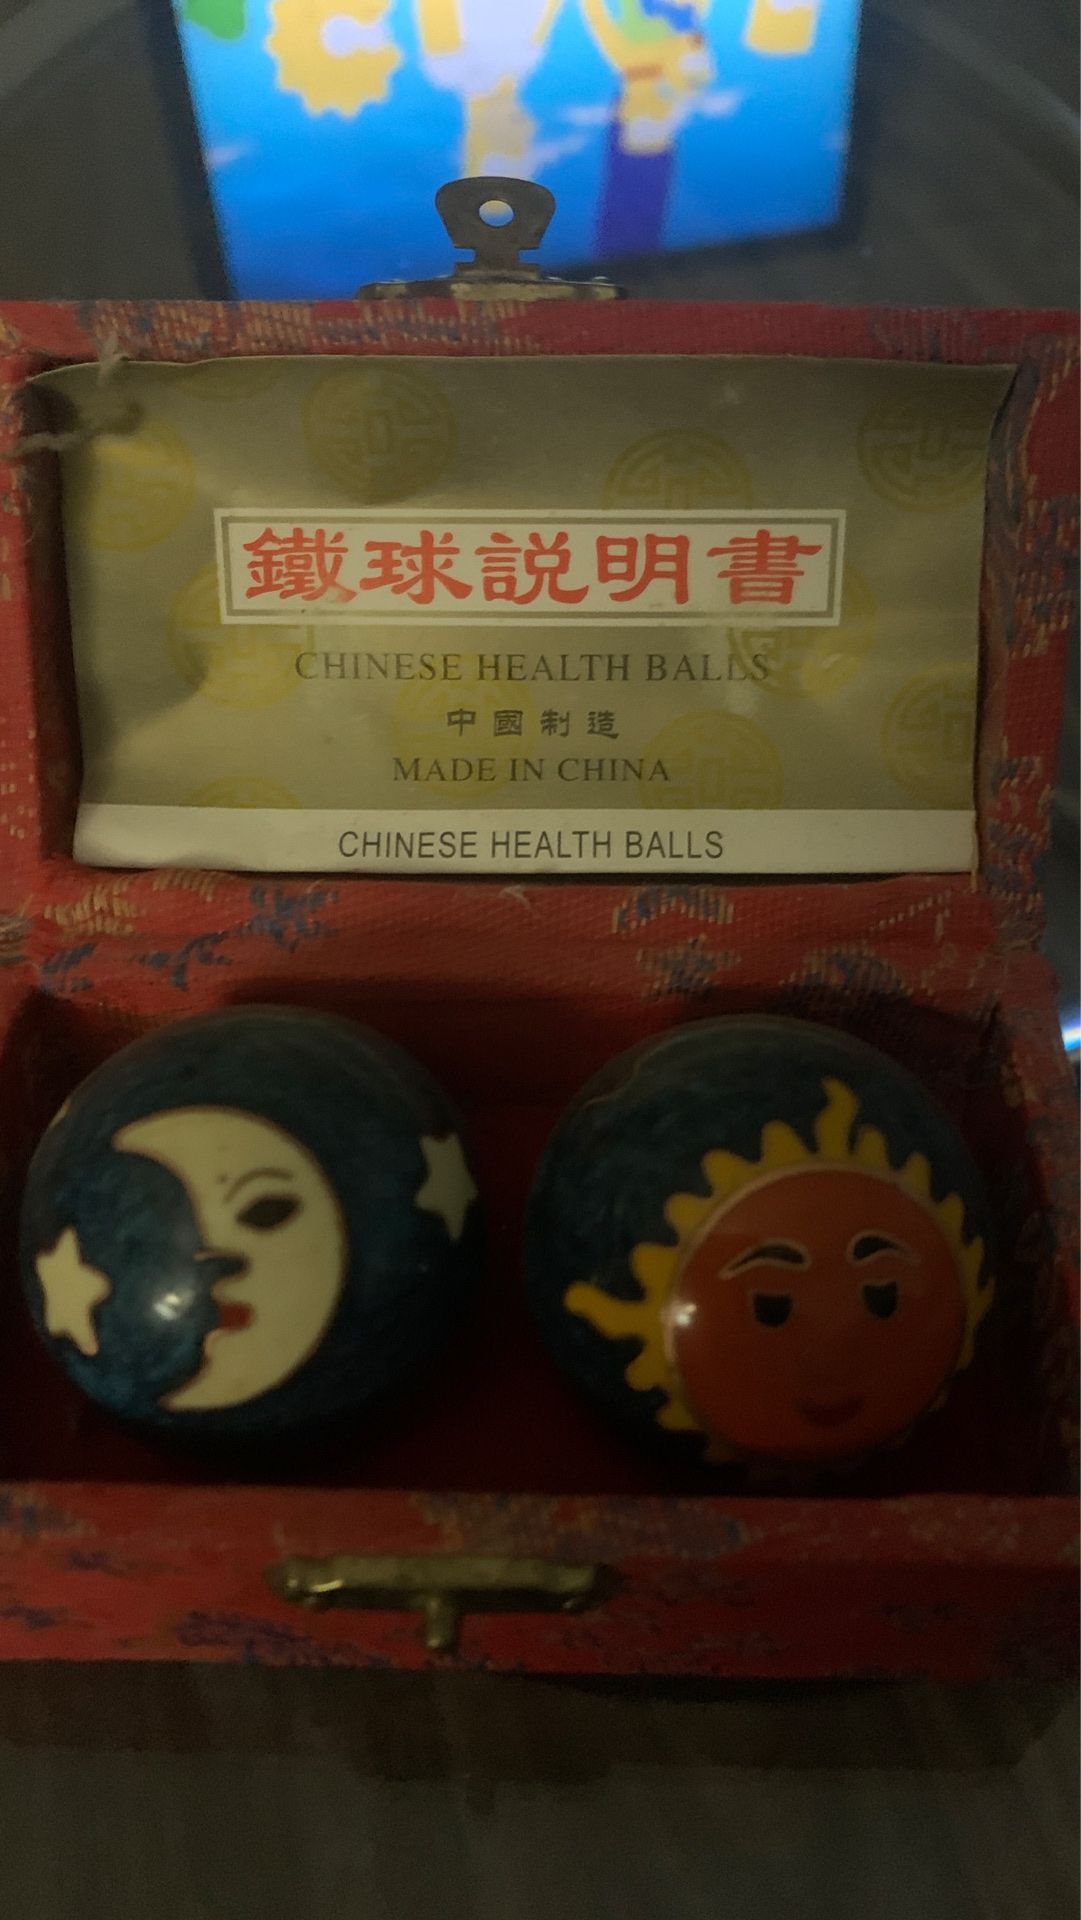 Chinese health balls